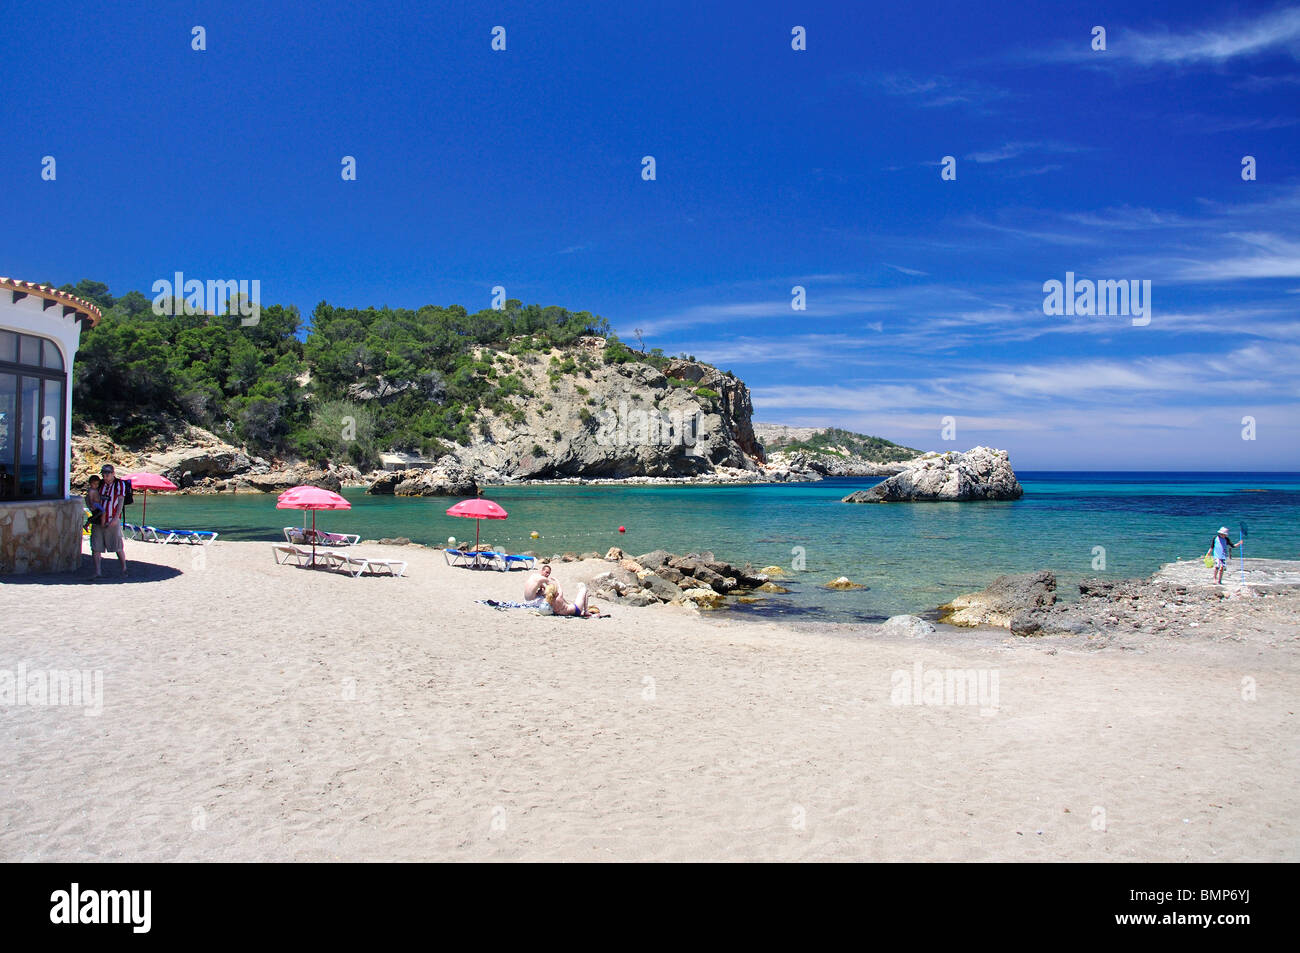 Beach view, Cala Xarraca, Ibiza, Balearic Islands, Spain Stock Photo